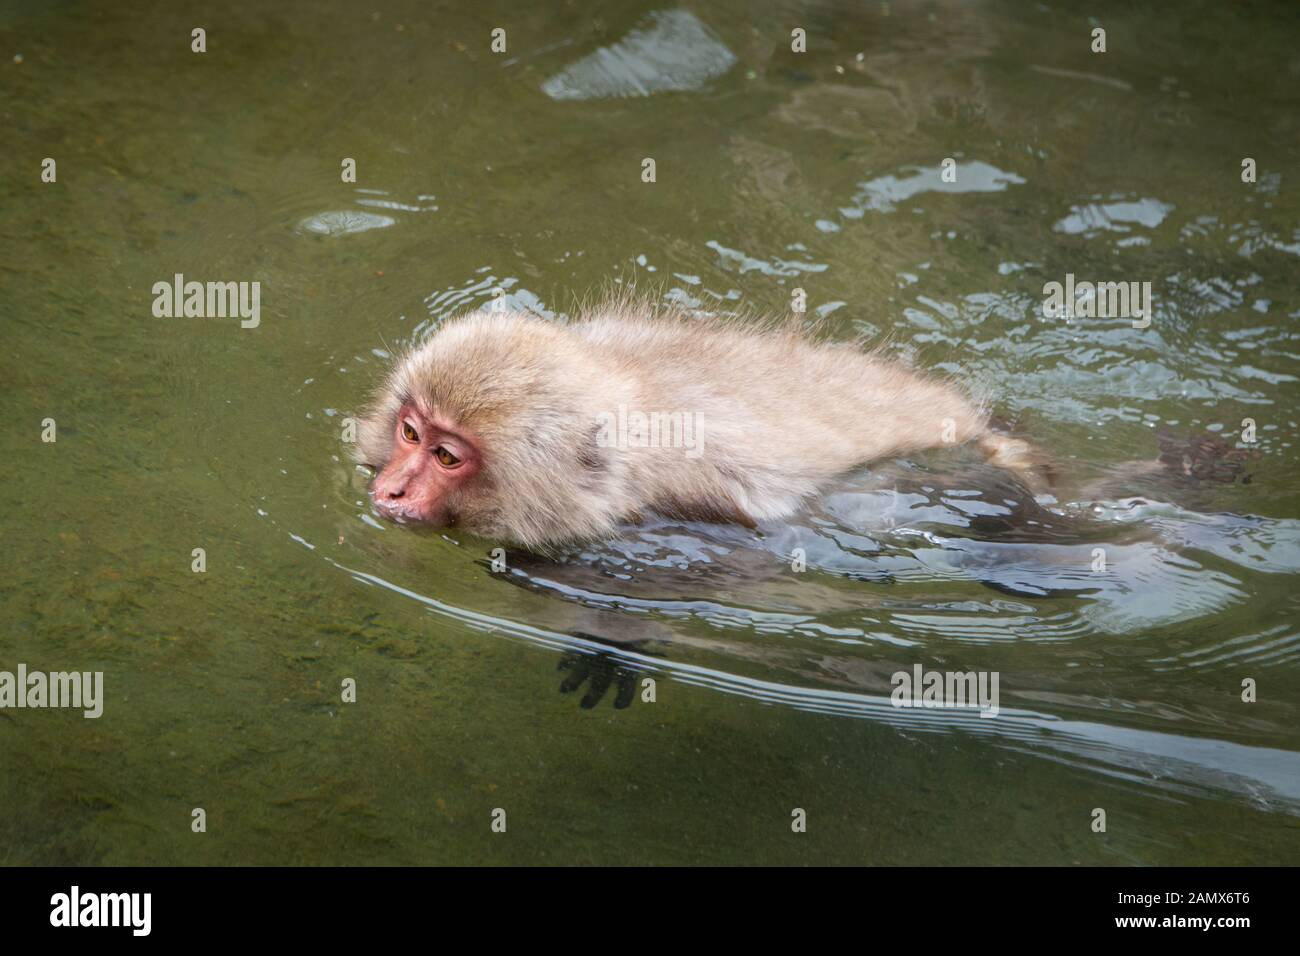 Japanische macaque Affen schwimmen in der heißen Quelle in der jigokudani (bedeutet Hölle Valley) snow Monkey Park in Nagano Japan Stockfoto